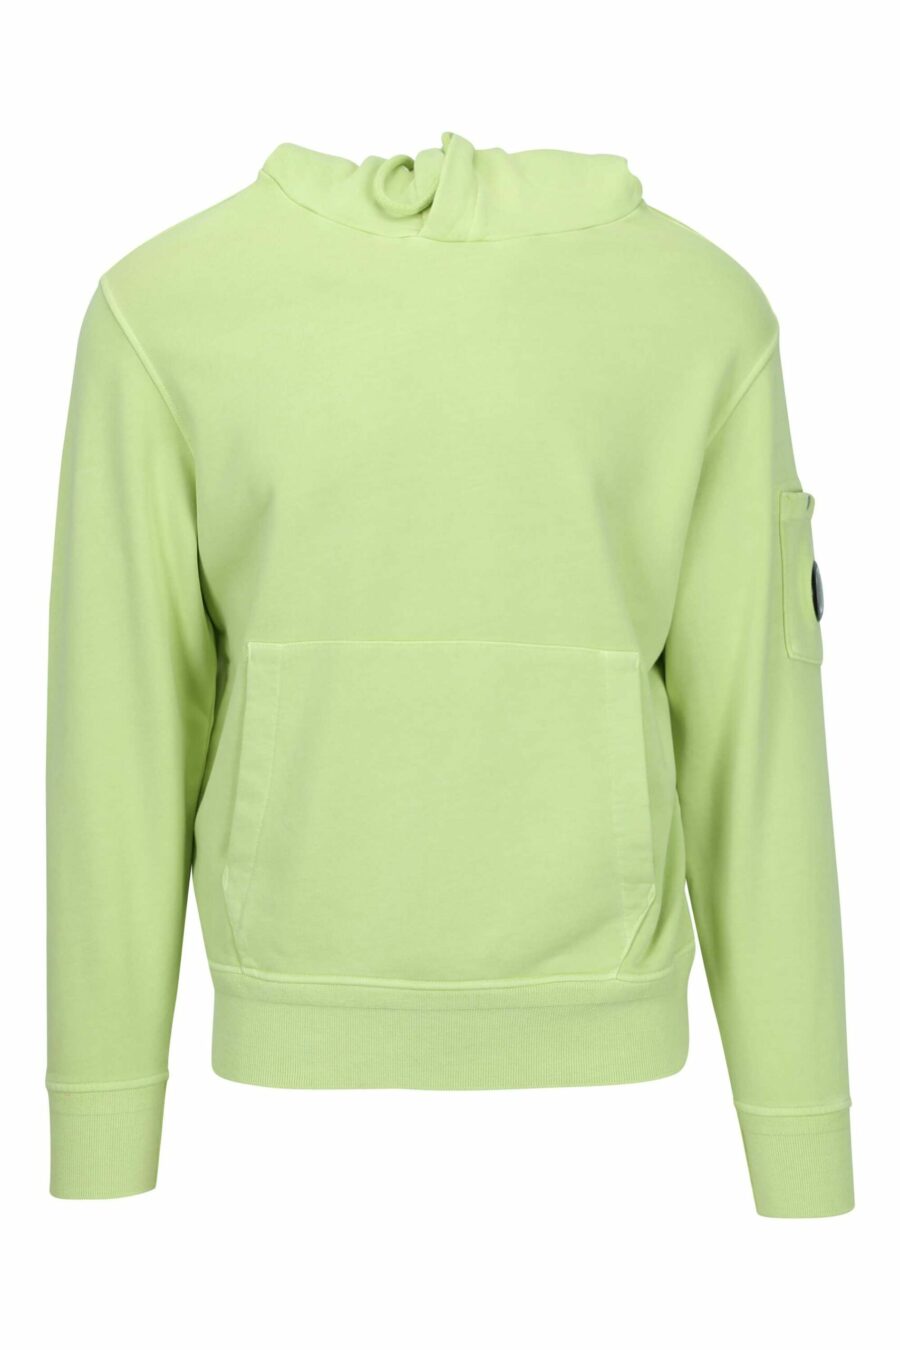 Hellgrünes Kapuzensweatshirt mit Minilogo-Linsentasche - 7620943677225 skaliert